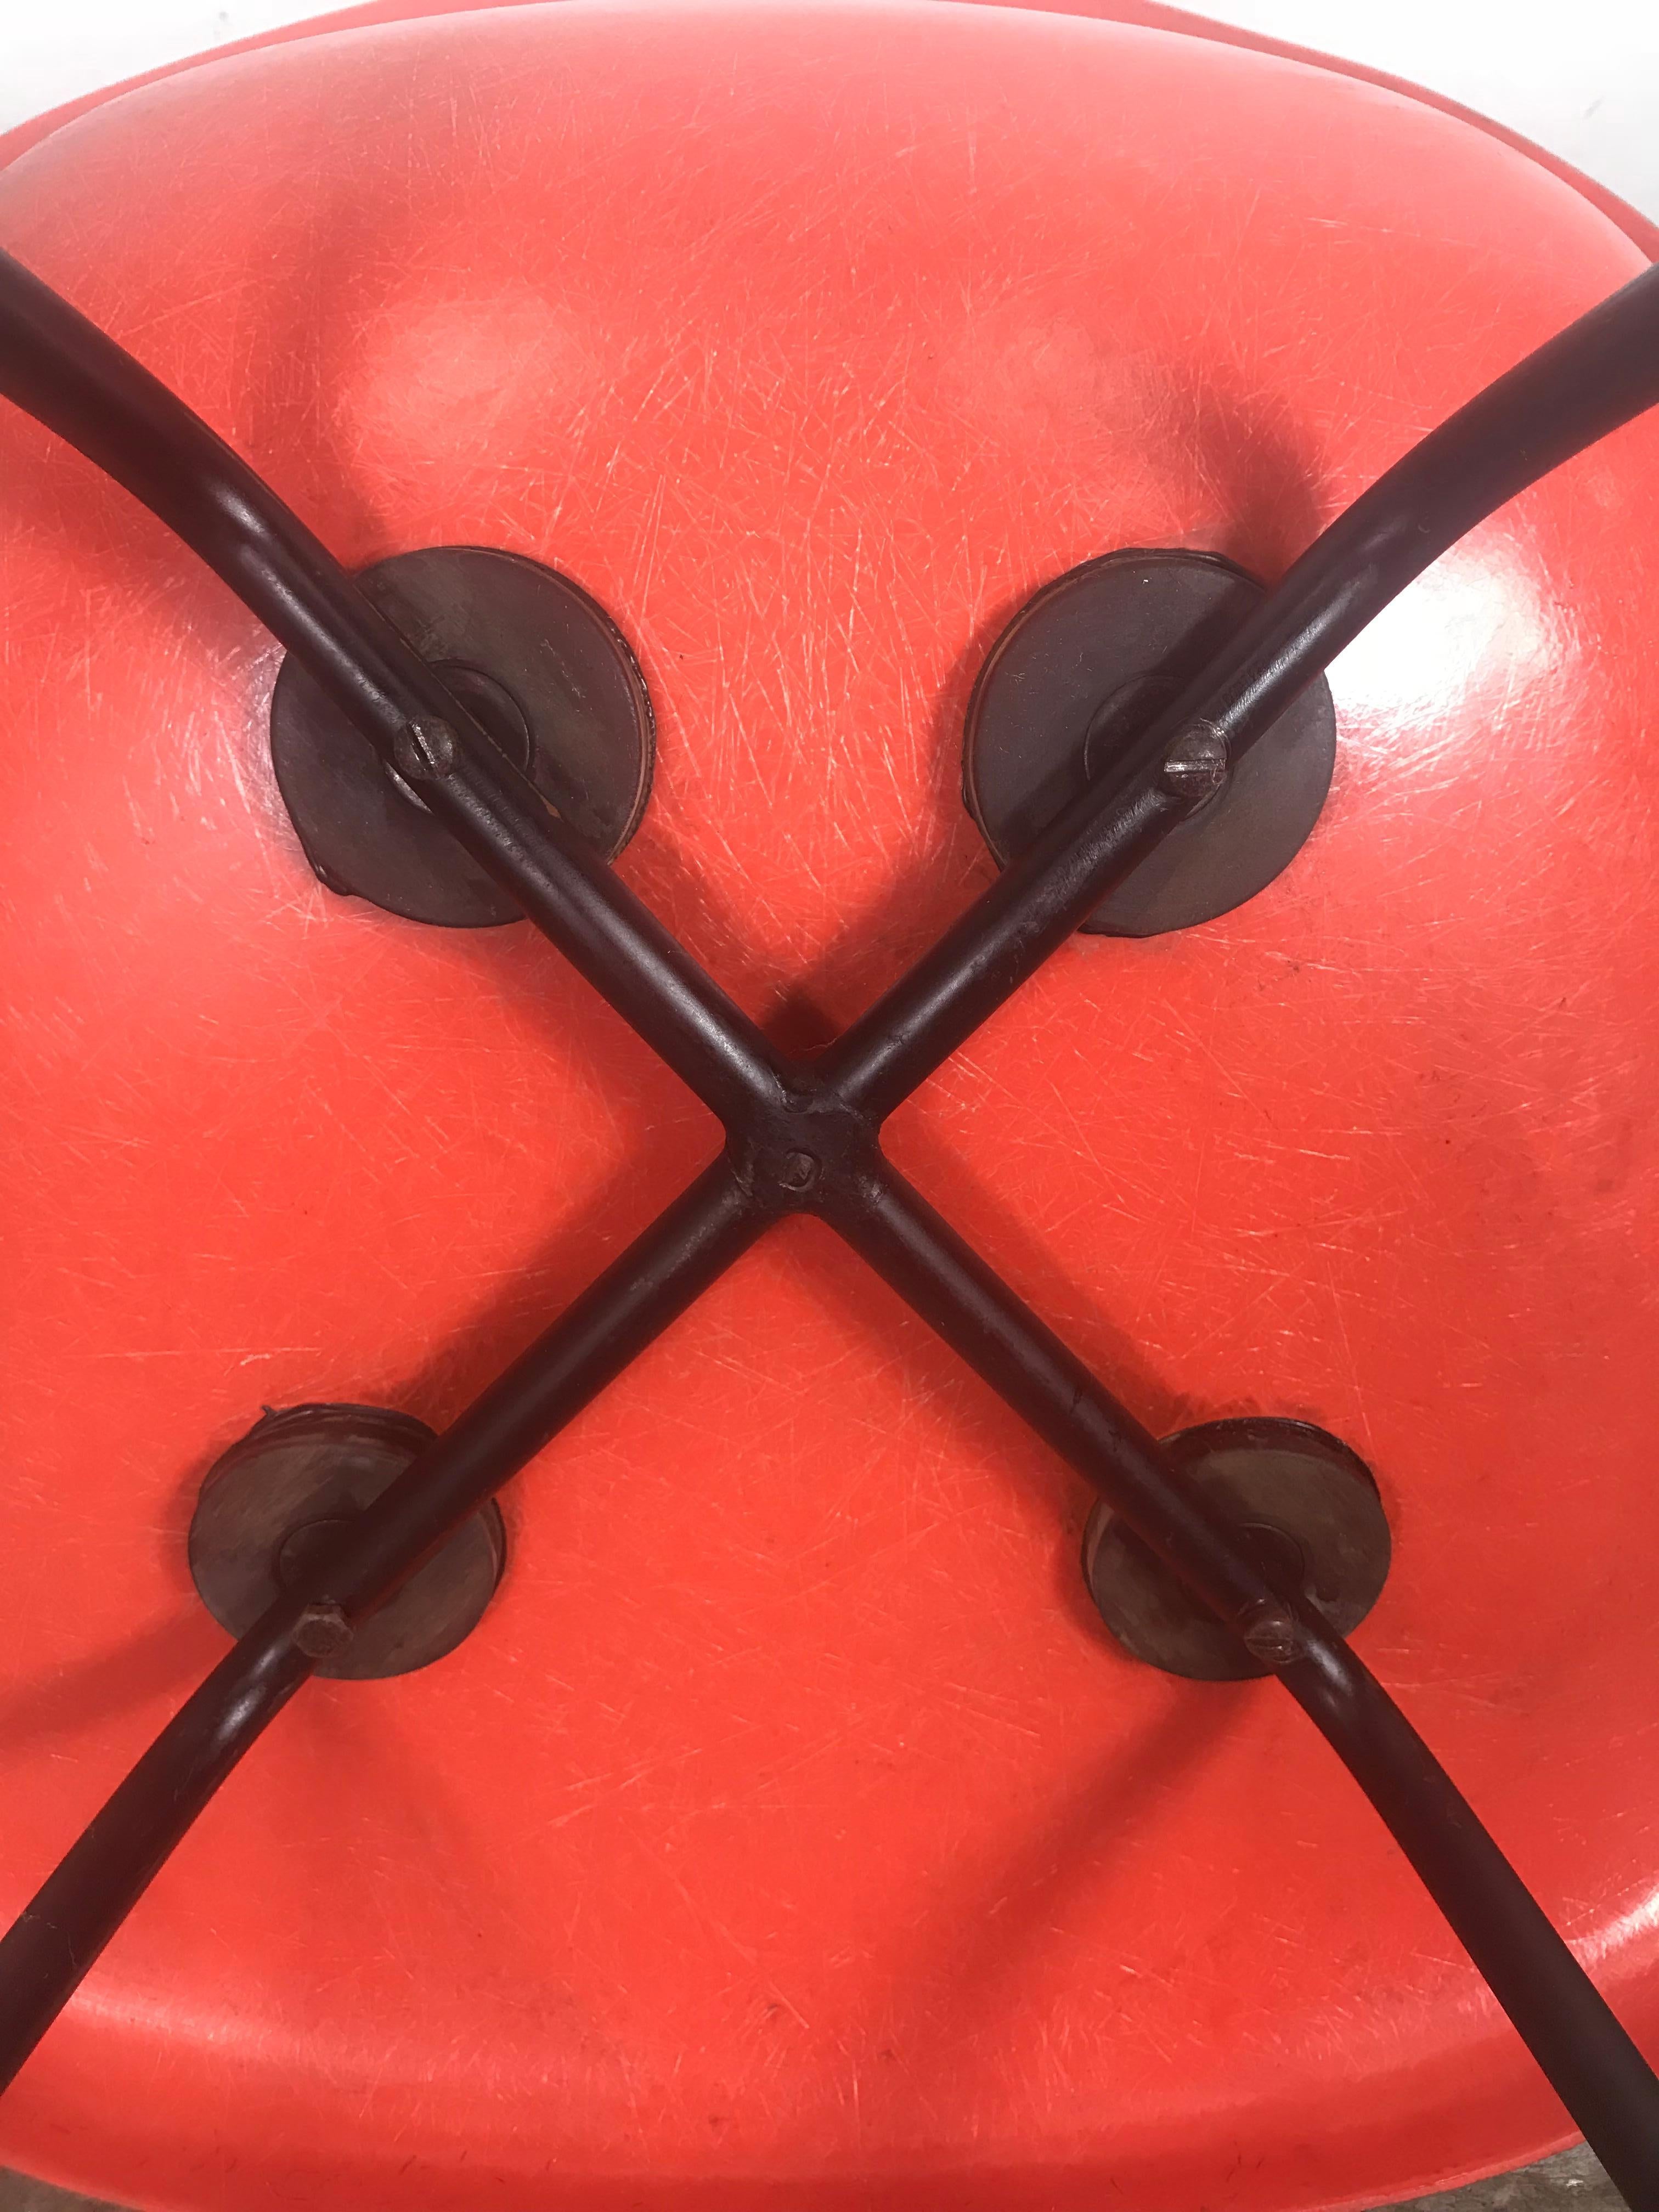 Früher lachsfarbener Charles und Ray Eames Arm Shell Chair, 2. Generation. X-Basis. Erstaunlicher Zustand, behält sauber, knackig Gelcoat, große Kuppeln der Stille Stoßdämpfer Halterungen und solide Eisen X Basis, atemberaubend!